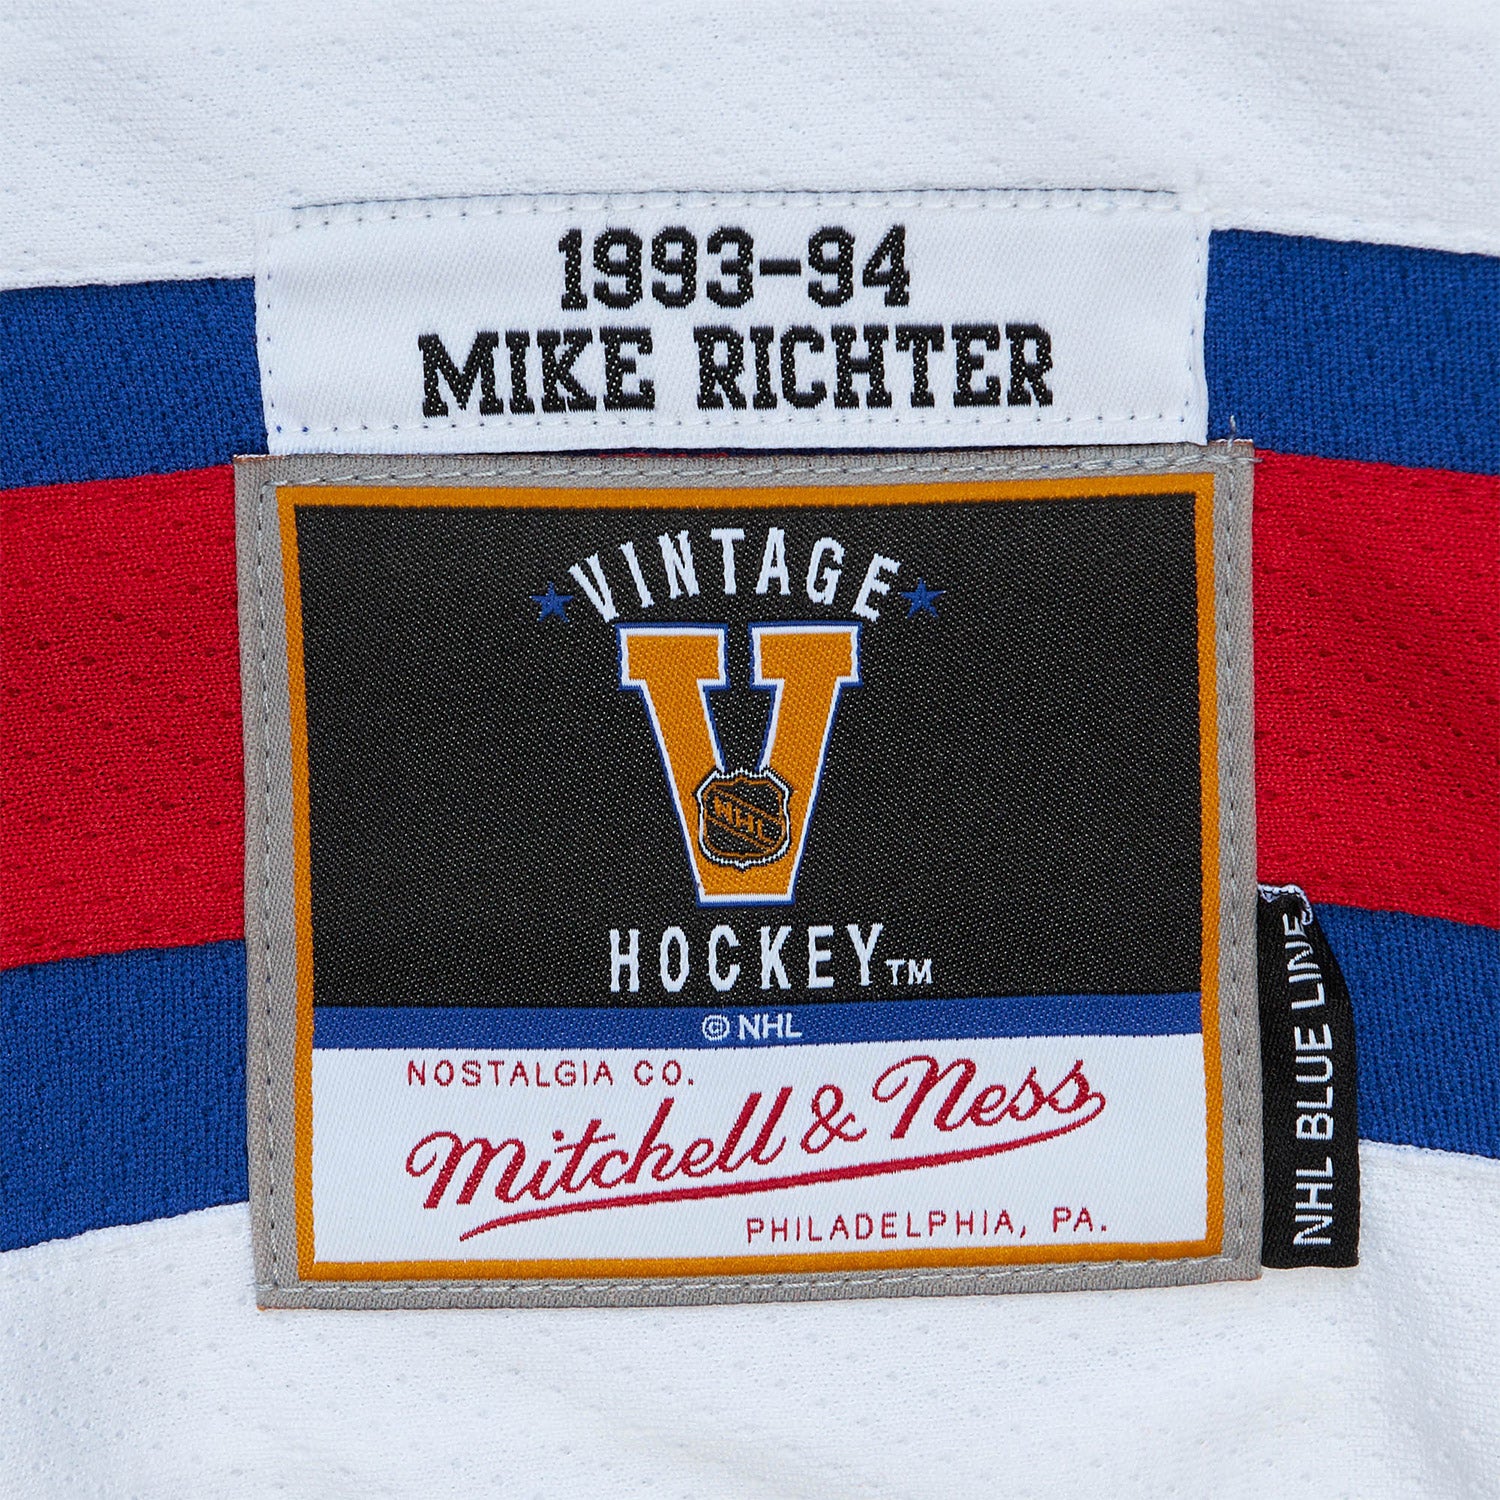 Mike Richter Original Ccm New York Rangers 1998 liberty Jersey